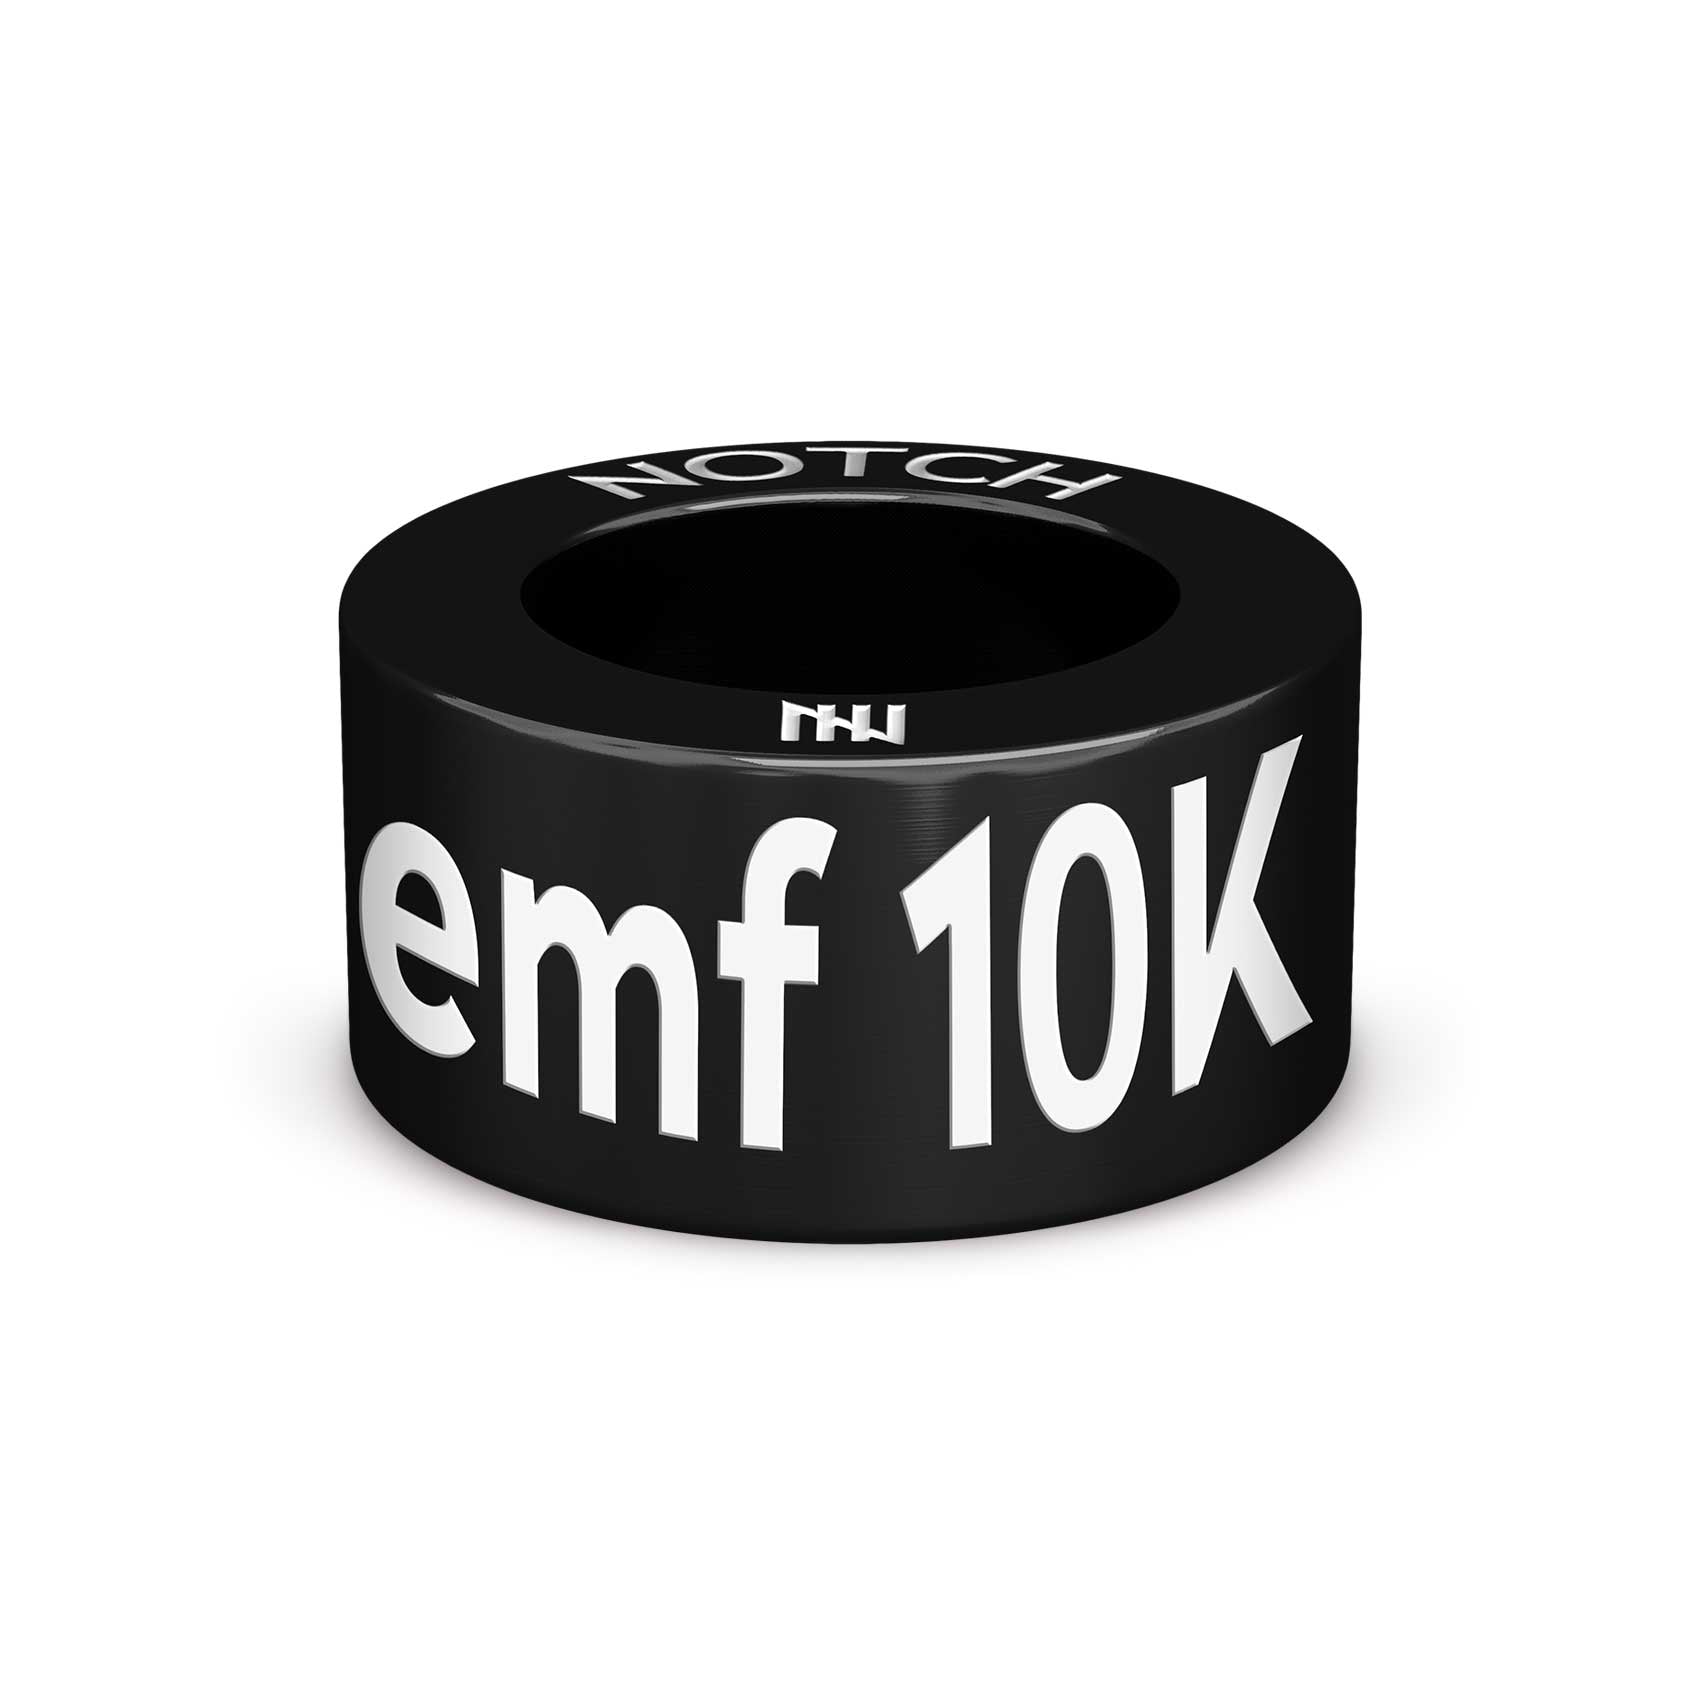 EMF 10K NOTCH Charm